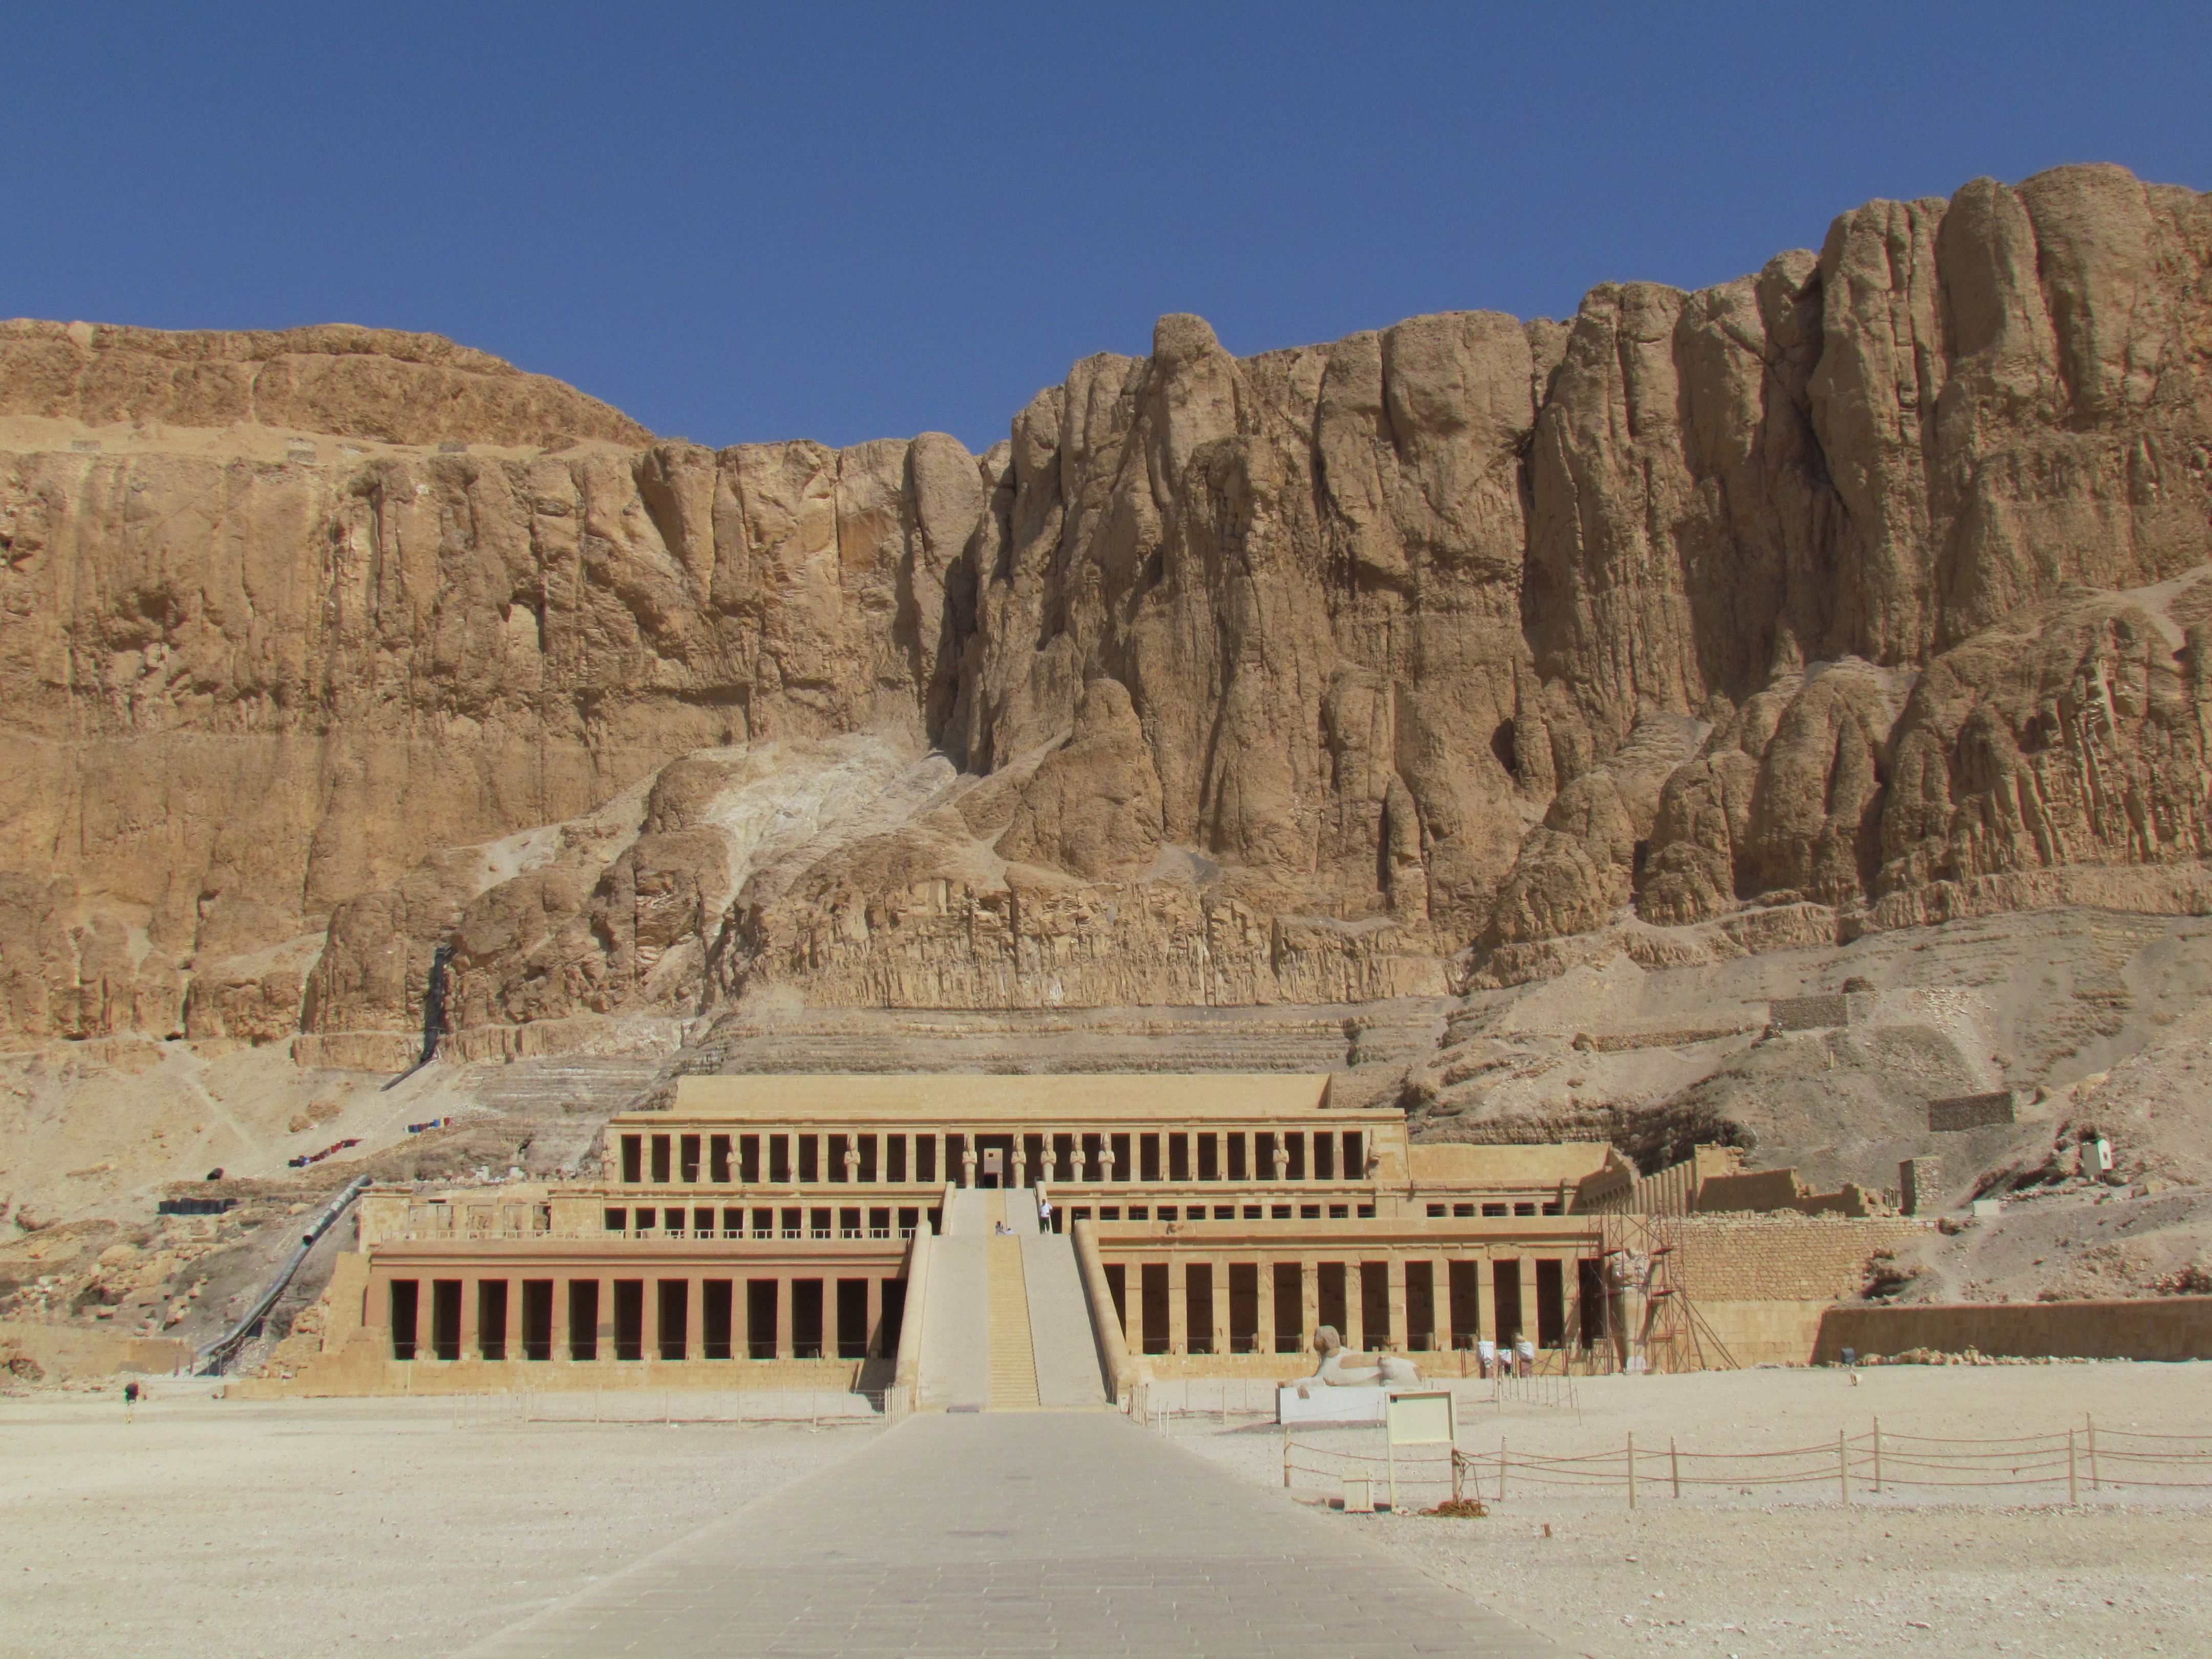 女王庙也叫哈特谢普苏特神庙,埃及人称这位女法老是埃及的武则天